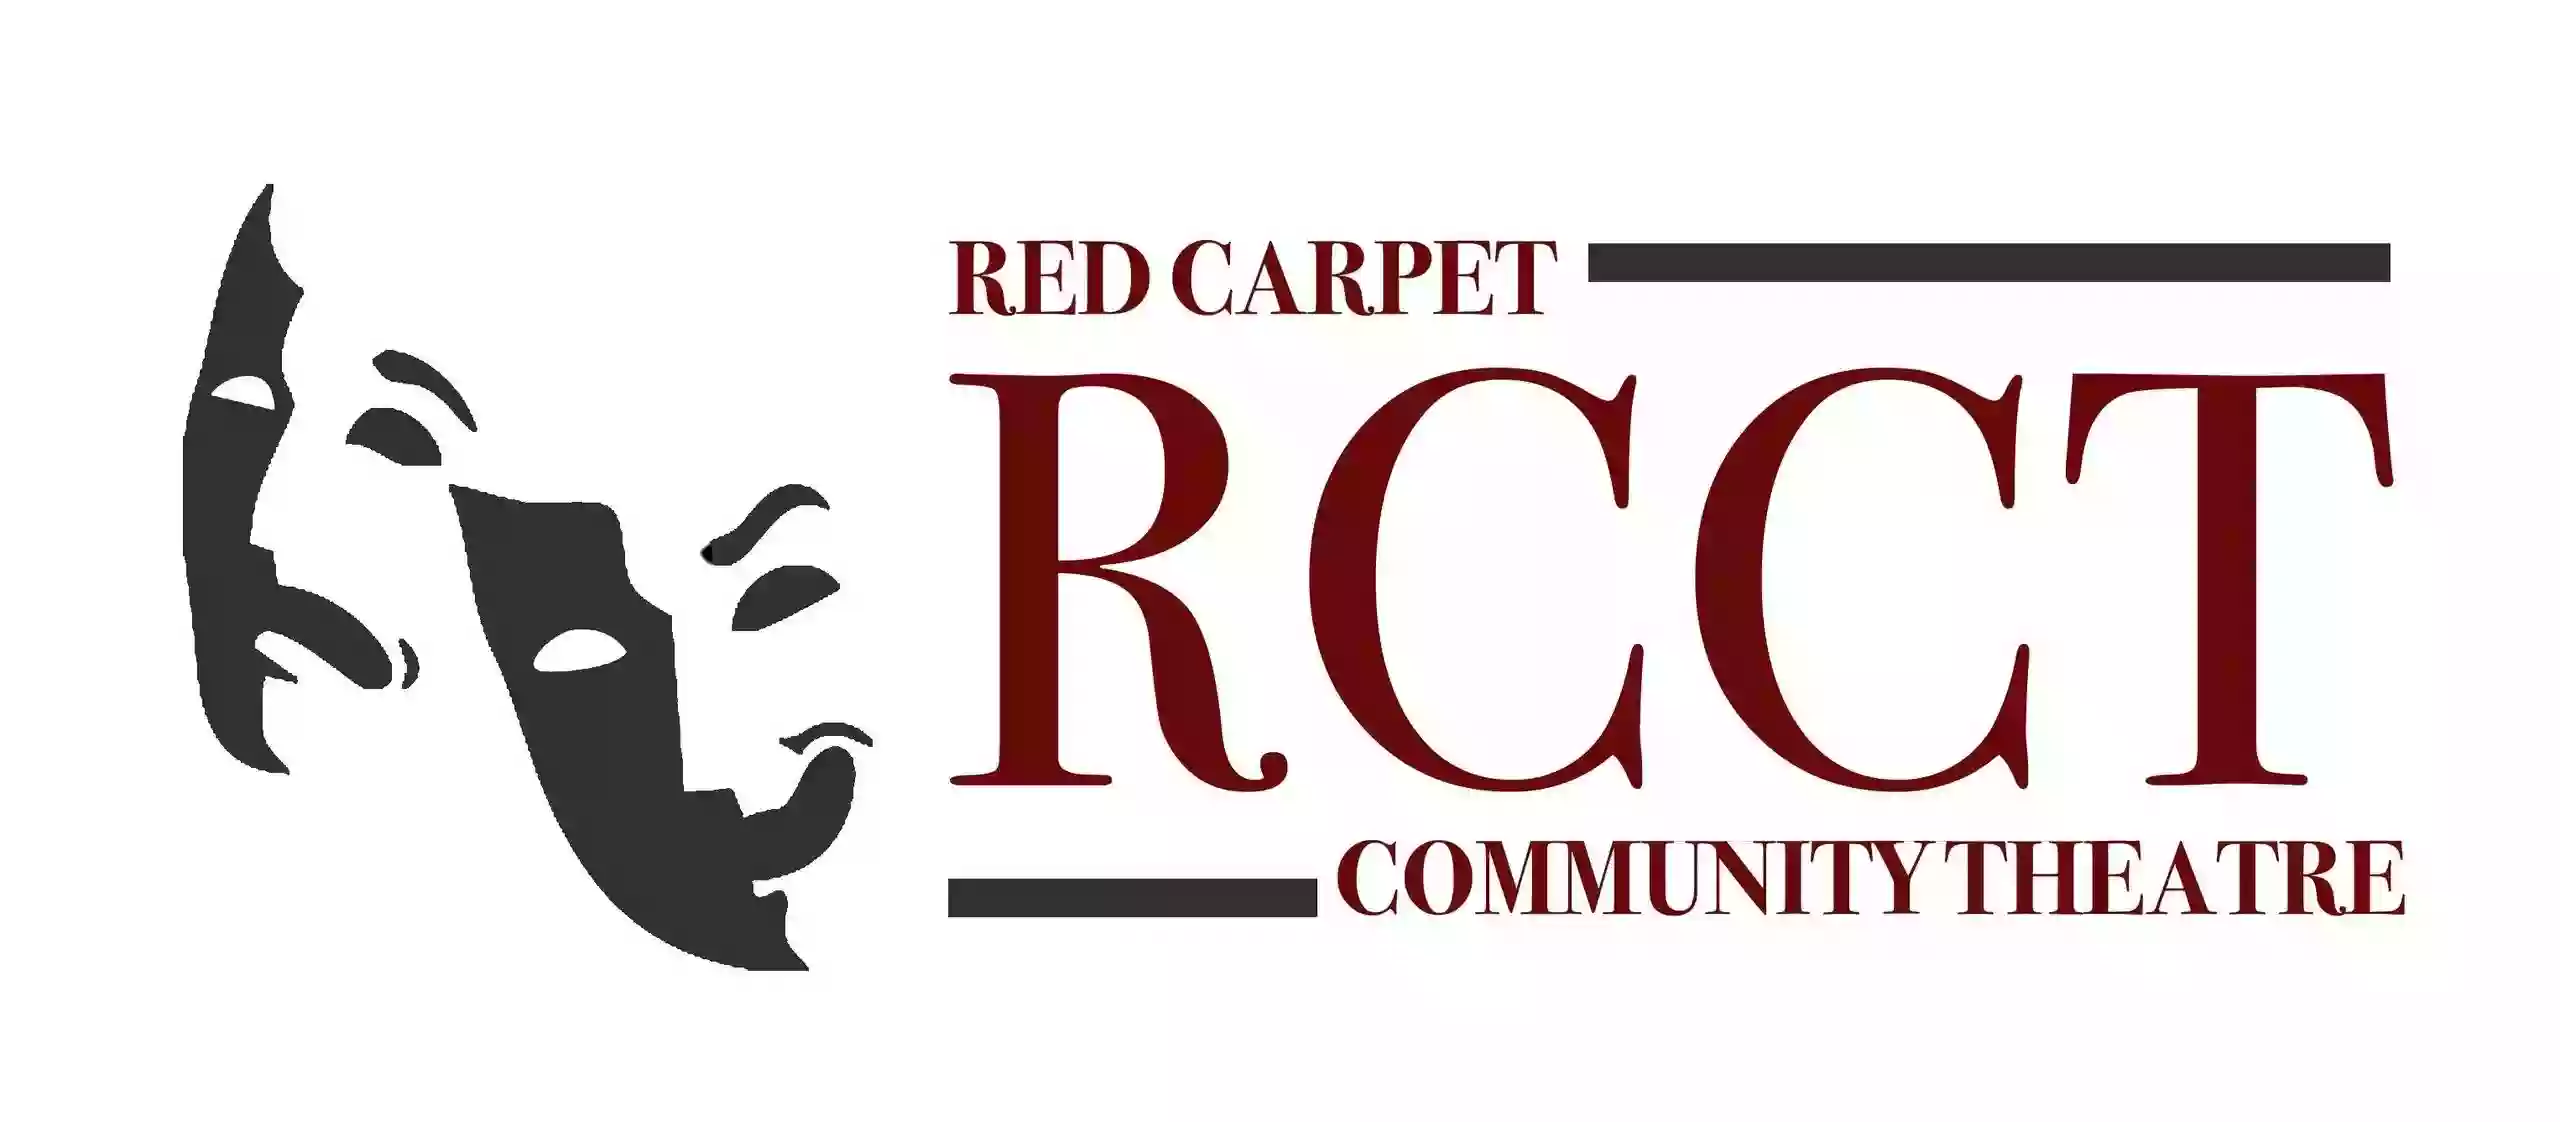 Red Carpet Community Theatre